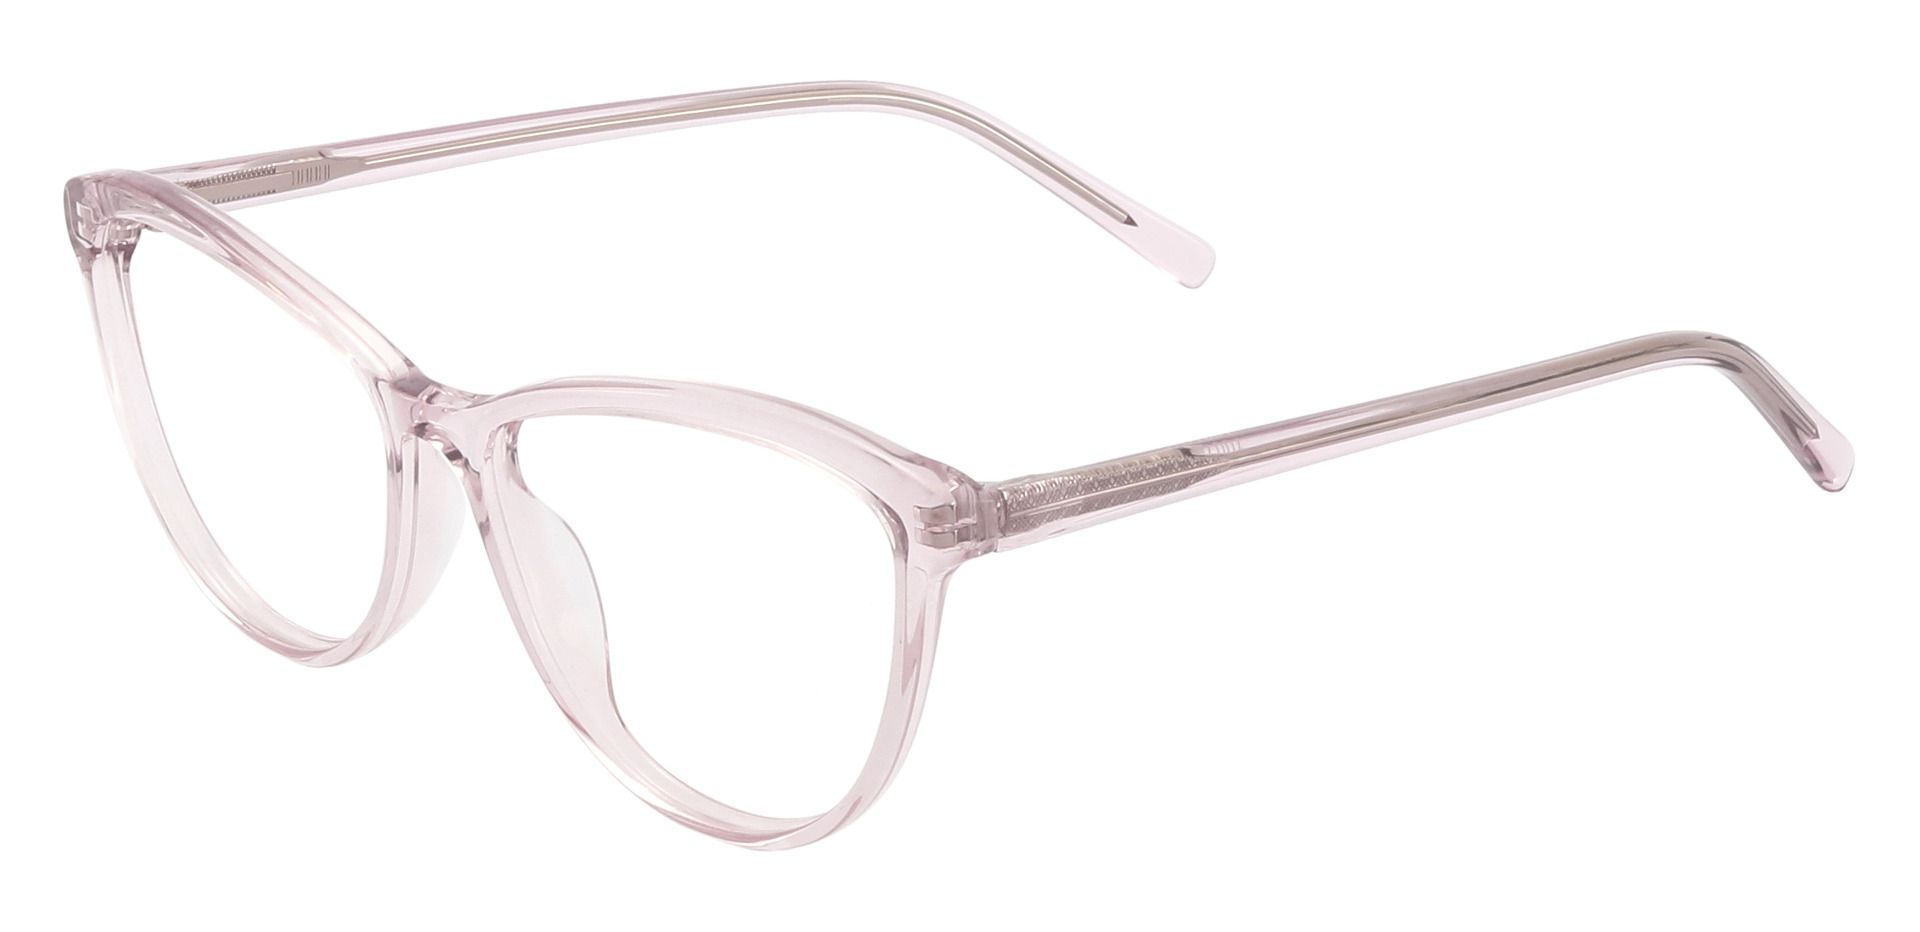 Helen Cat Eye Prescription Glasses - Clear